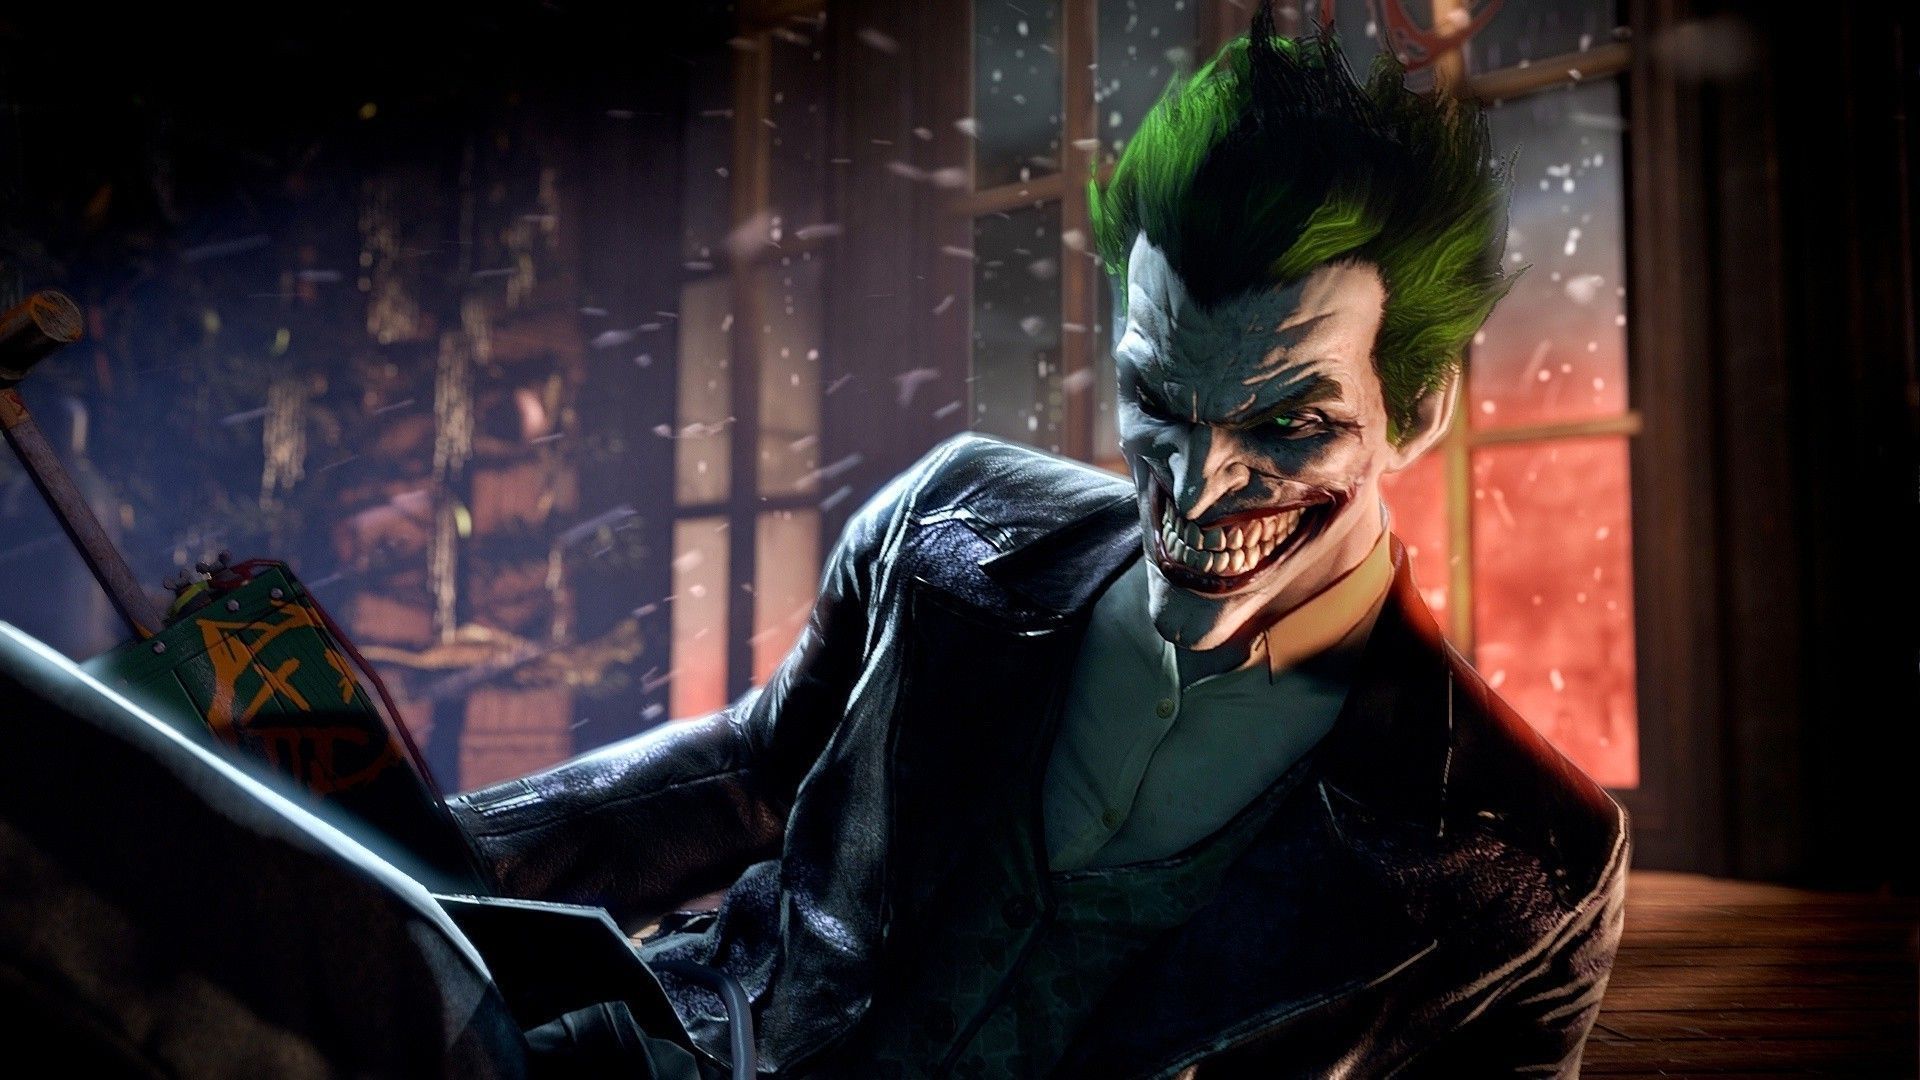 1280x1024px, free download, HD wallpaper: Batman Arkham Origins 2013, Batman  wallpaper, Games, wet, real people